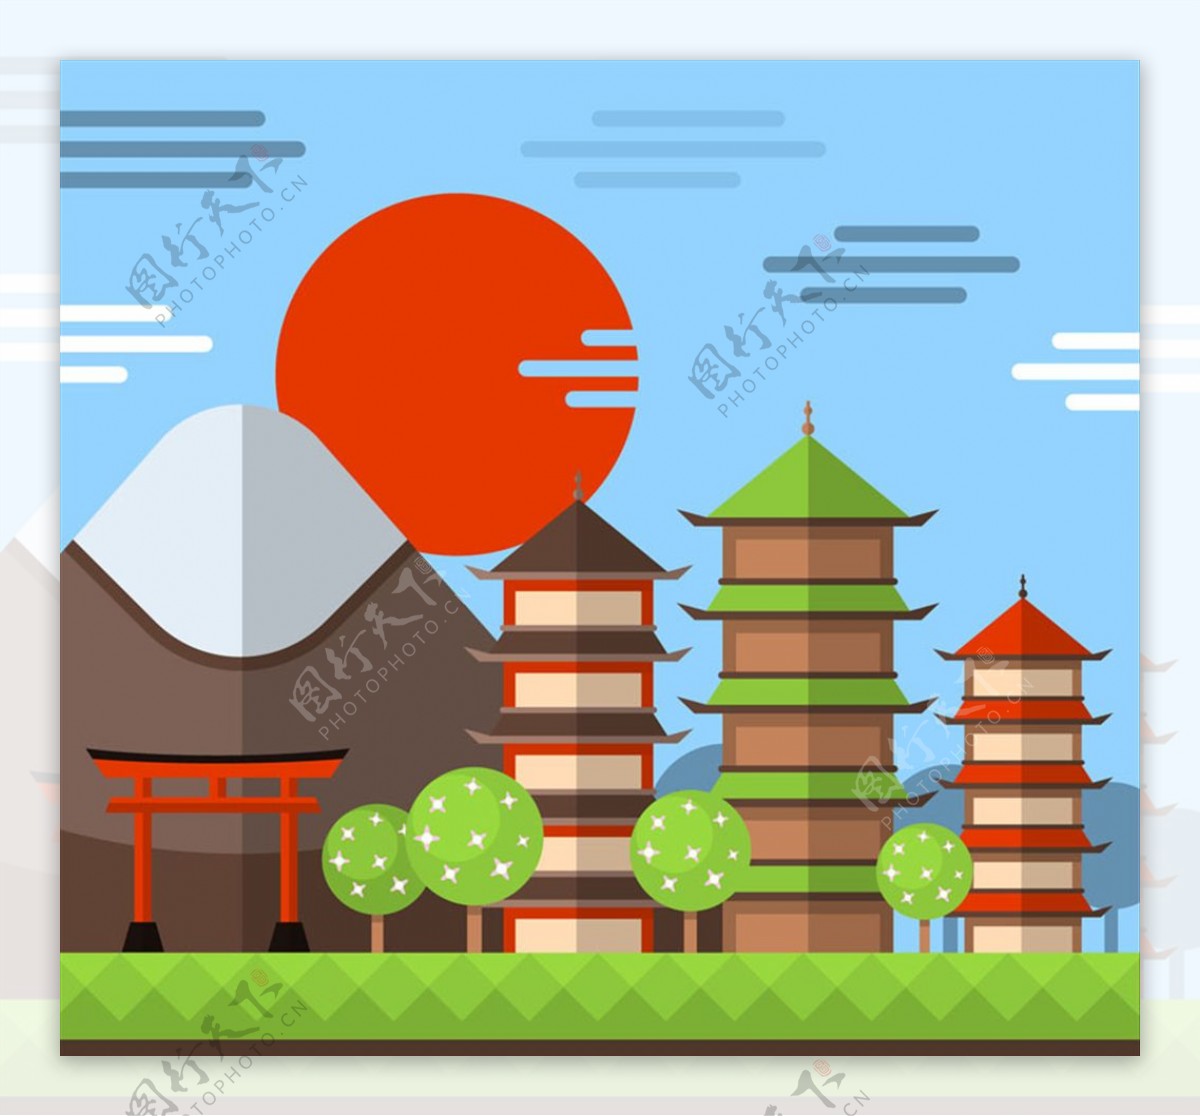 扁平化日本古建筑风景矢量素材